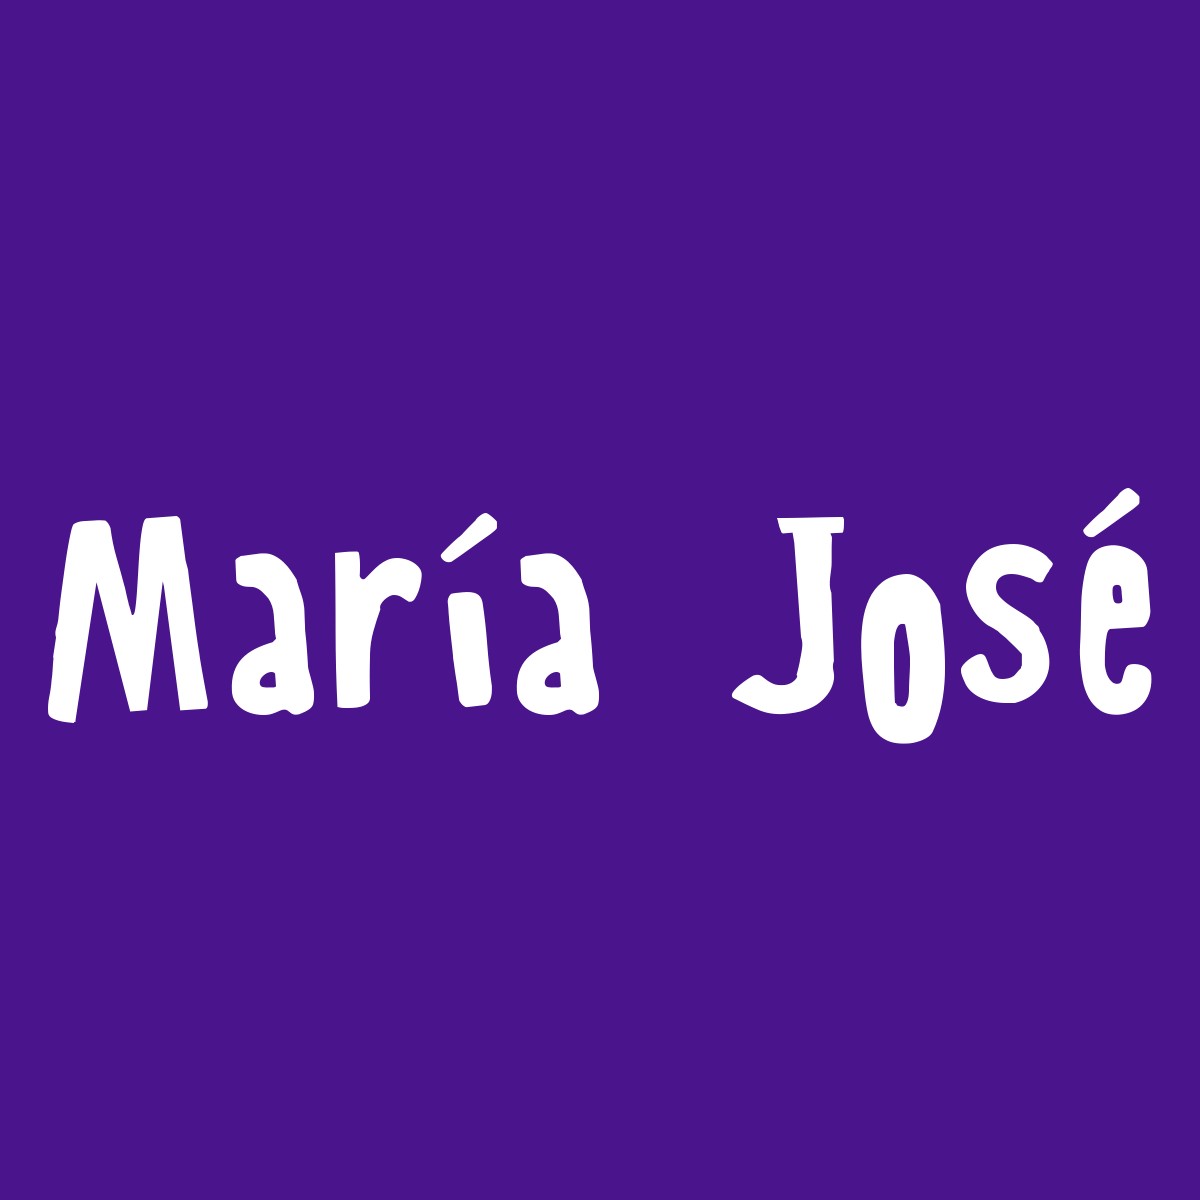 María José : Significado del nombre de mujer María José